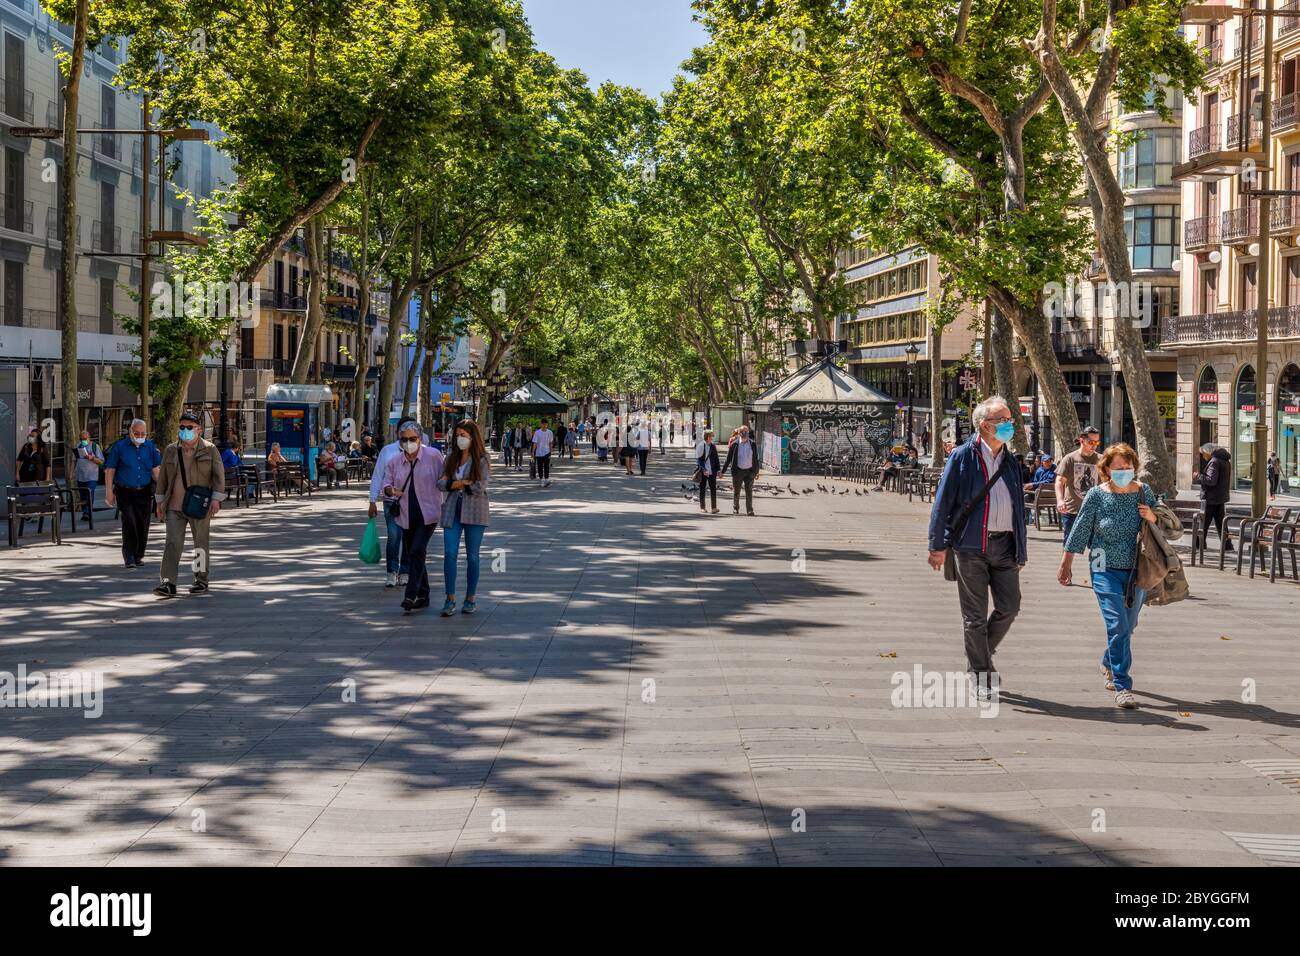 Centro commerciale pedonale Rambla con poche persone e nessun turista durante la pandemia Covid-19, Barcellona, Catalogna, Spagna Foto Stock